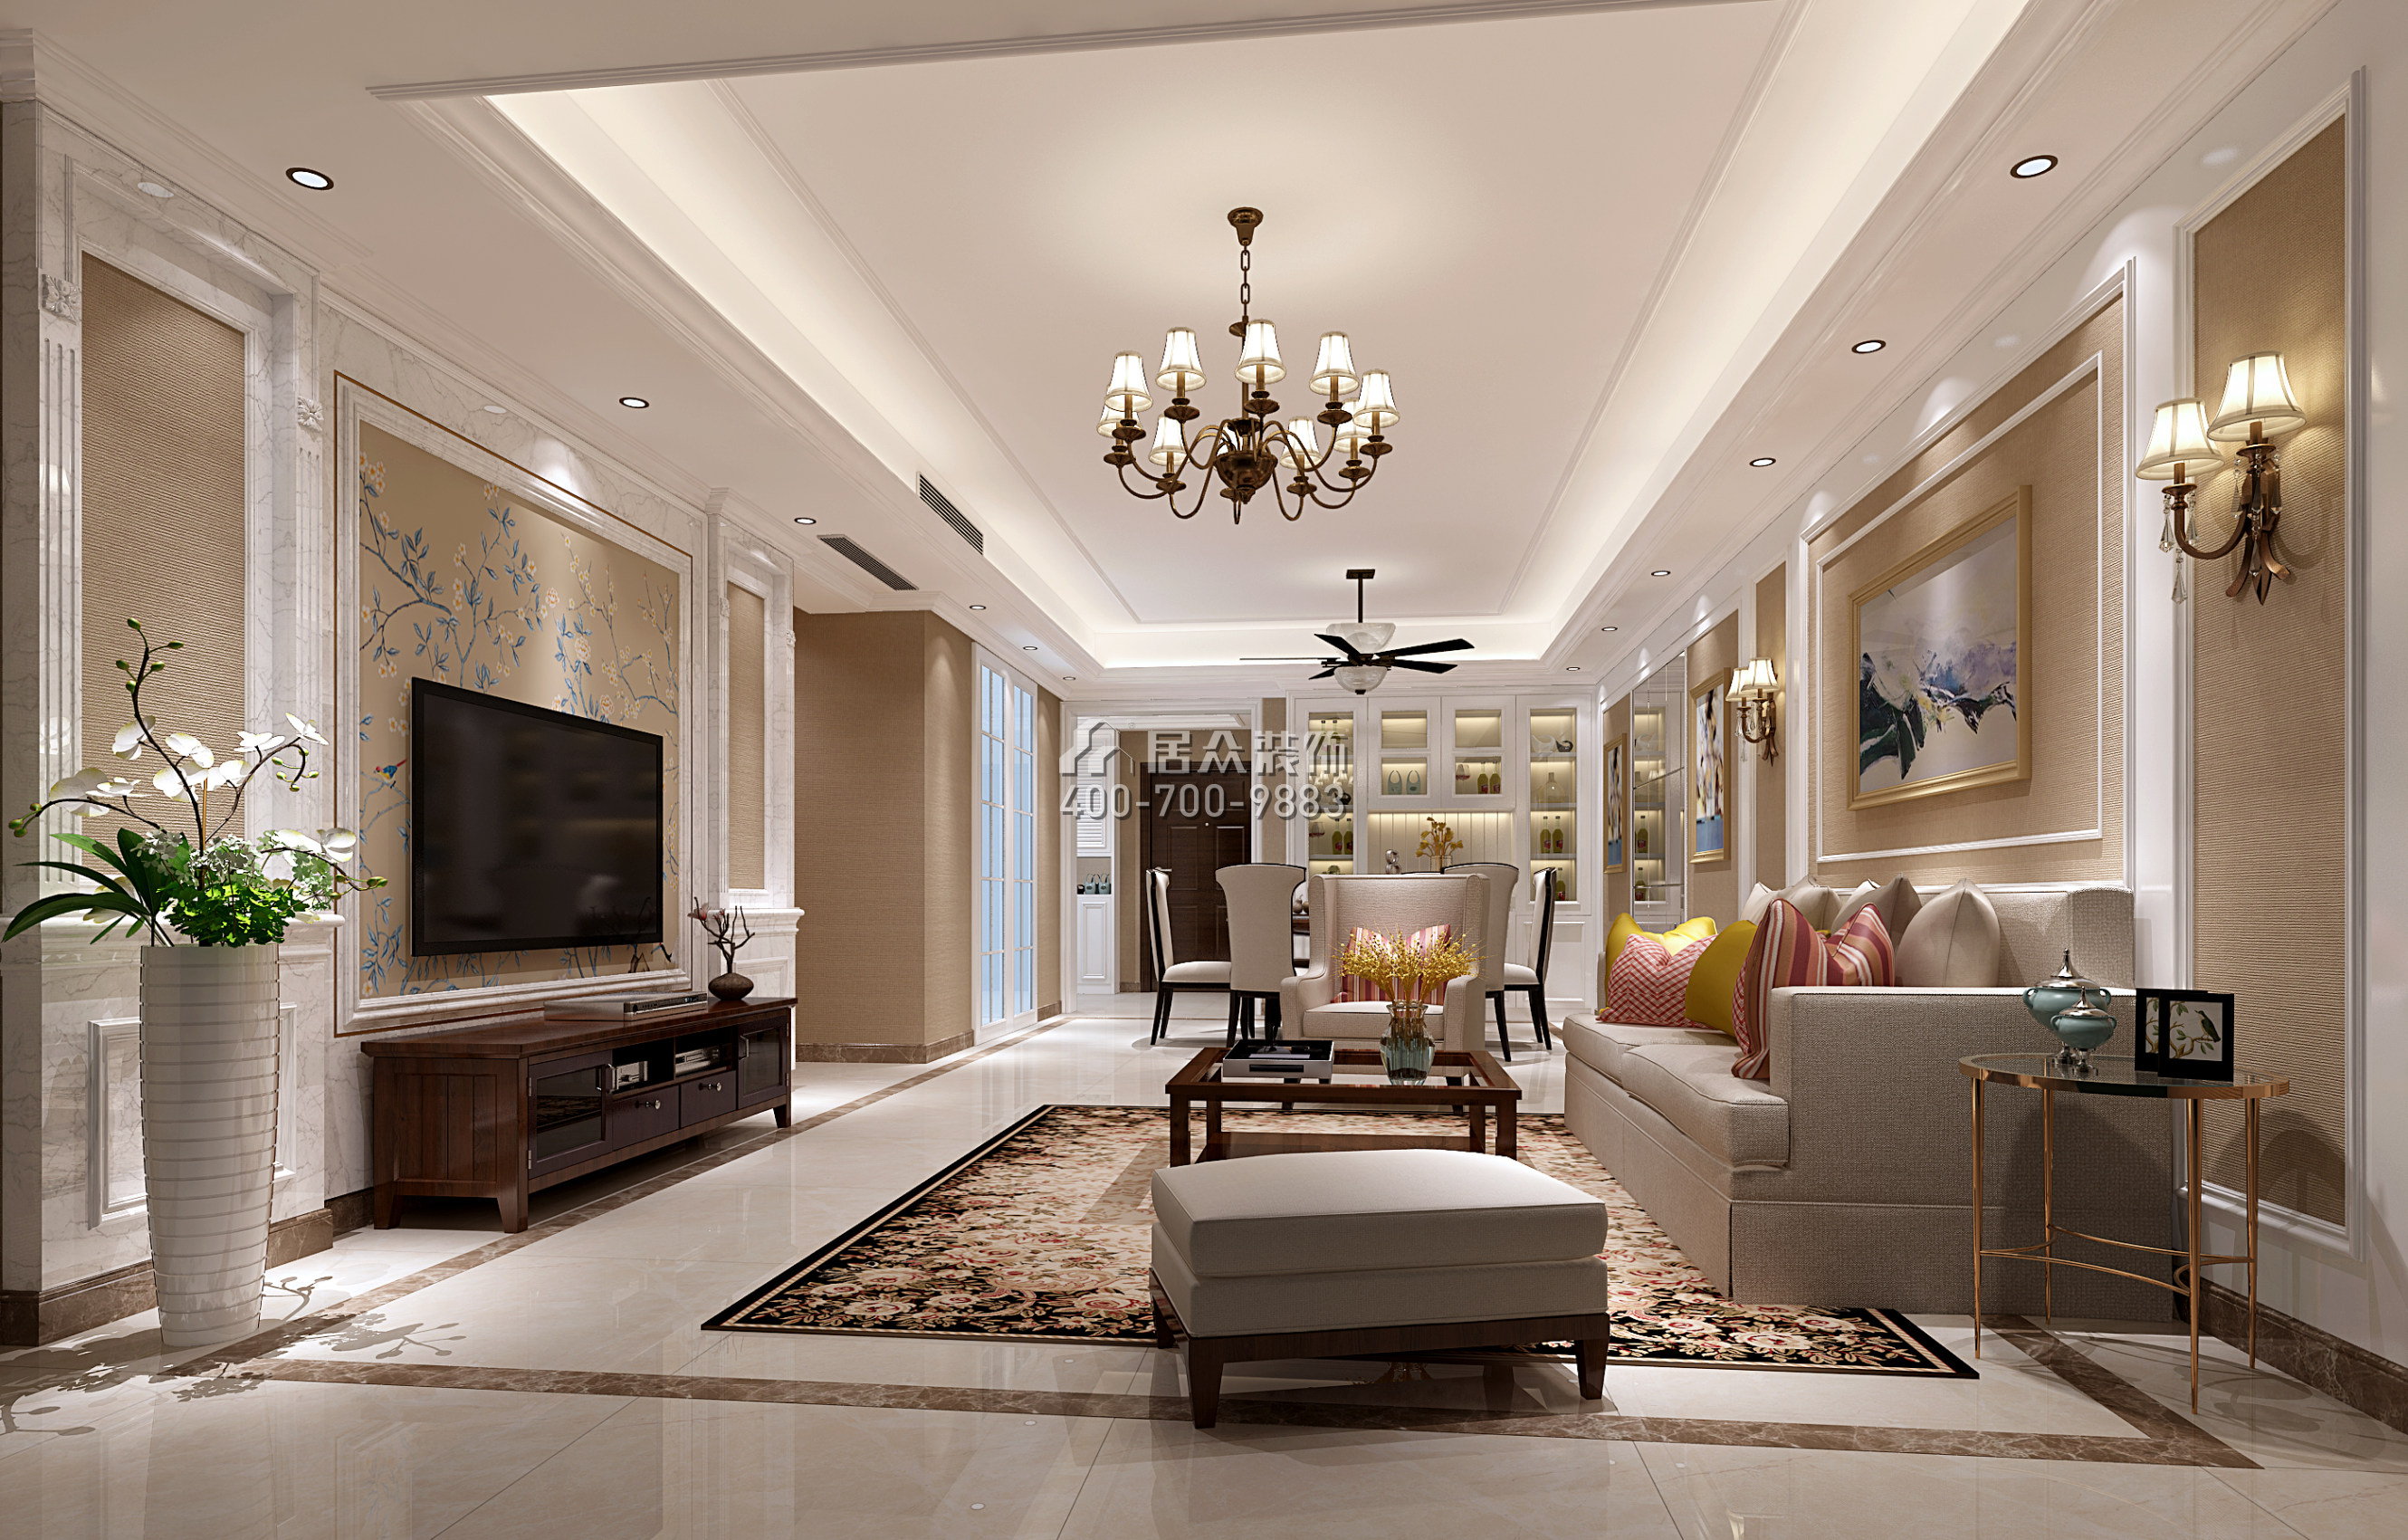 坪洲新村二期120平方米美式风格平层户型客厅装修效果图